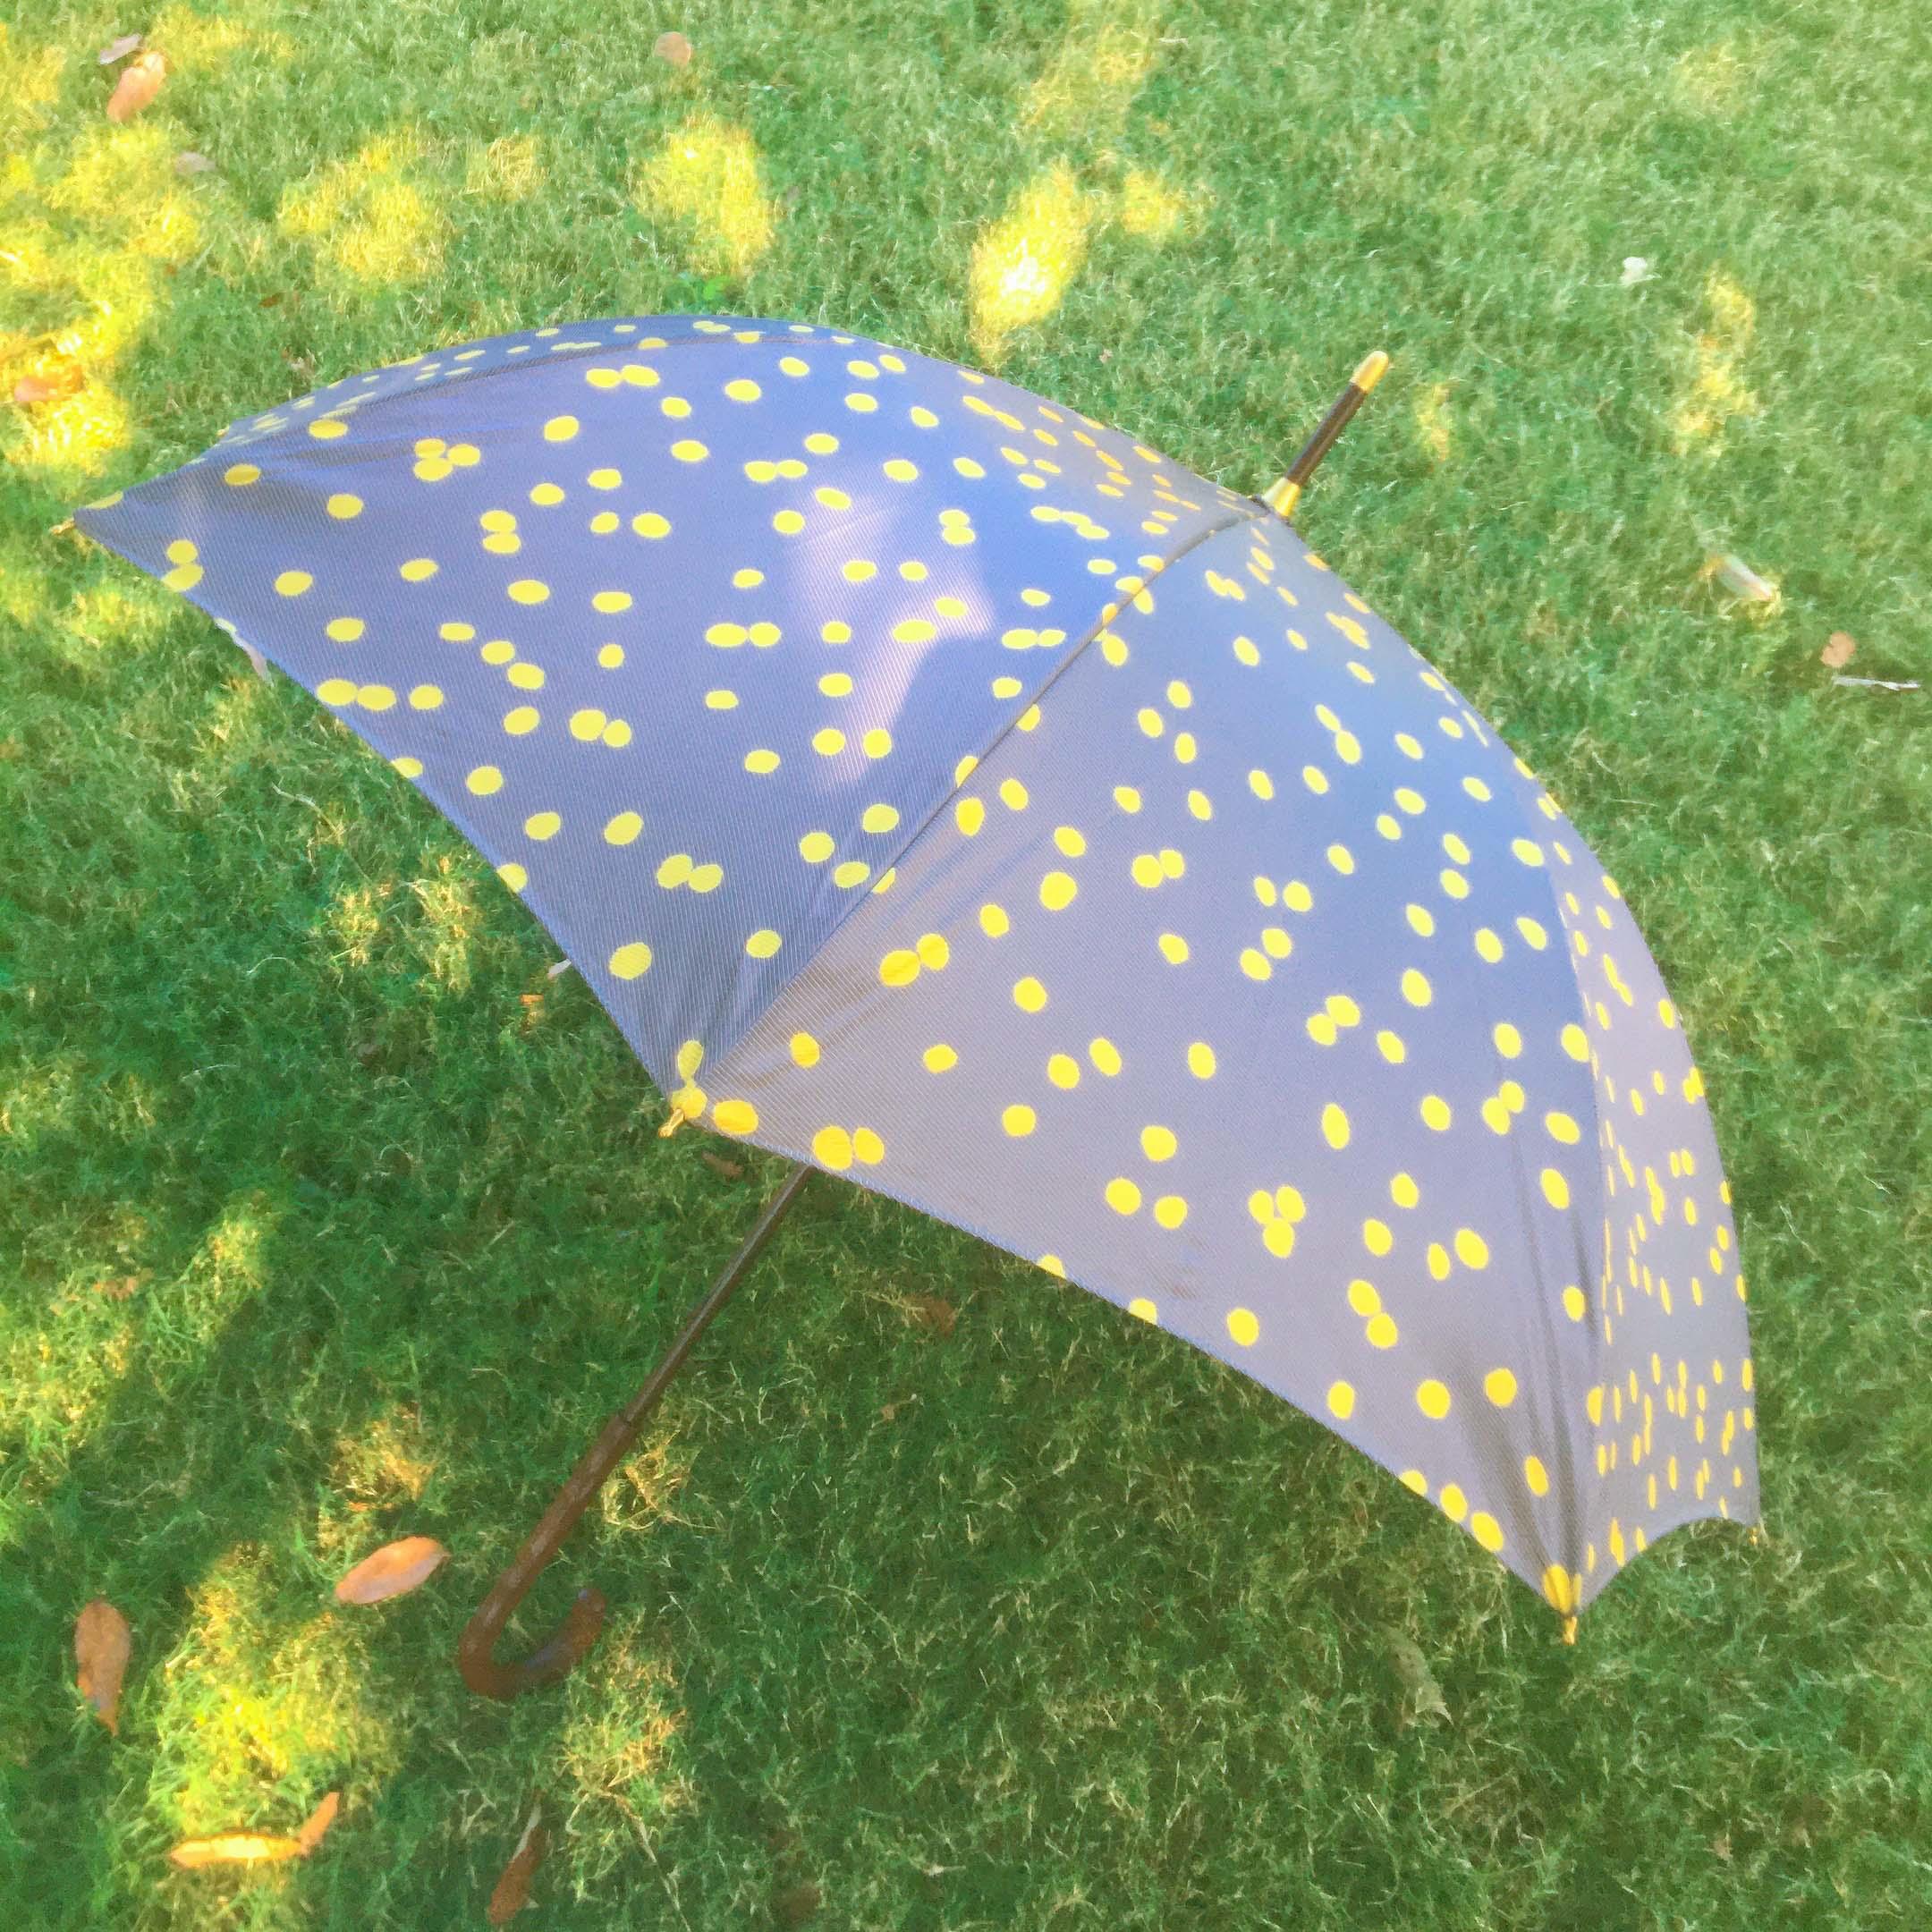 折り畳みの雨傘になりますkiyata イイダ傘店 折り畳み雨傘